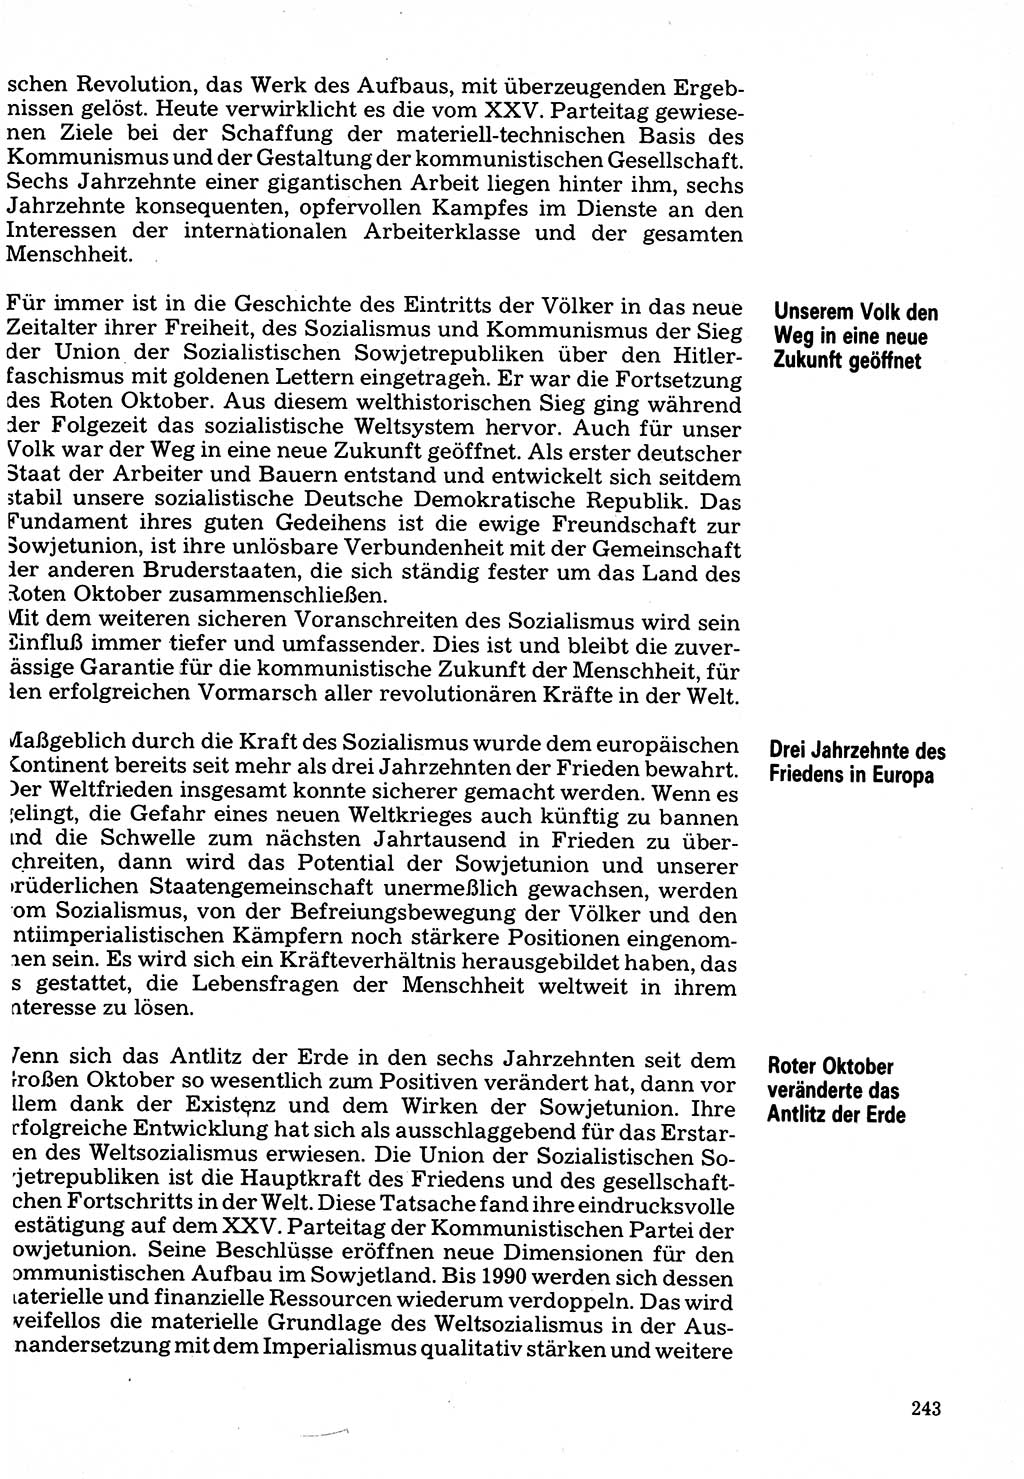 Neuer Weg (NW), Organ des Zentralkomitees (ZK) der SED (Sozialistische Einheitspartei Deutschlands) für Fragen des Parteilebens, 32. Jahrgang [Deutsche Demokratische Republik (DDR)] 1977, Seite 243 (NW ZK SED DDR 1977, S. 243)